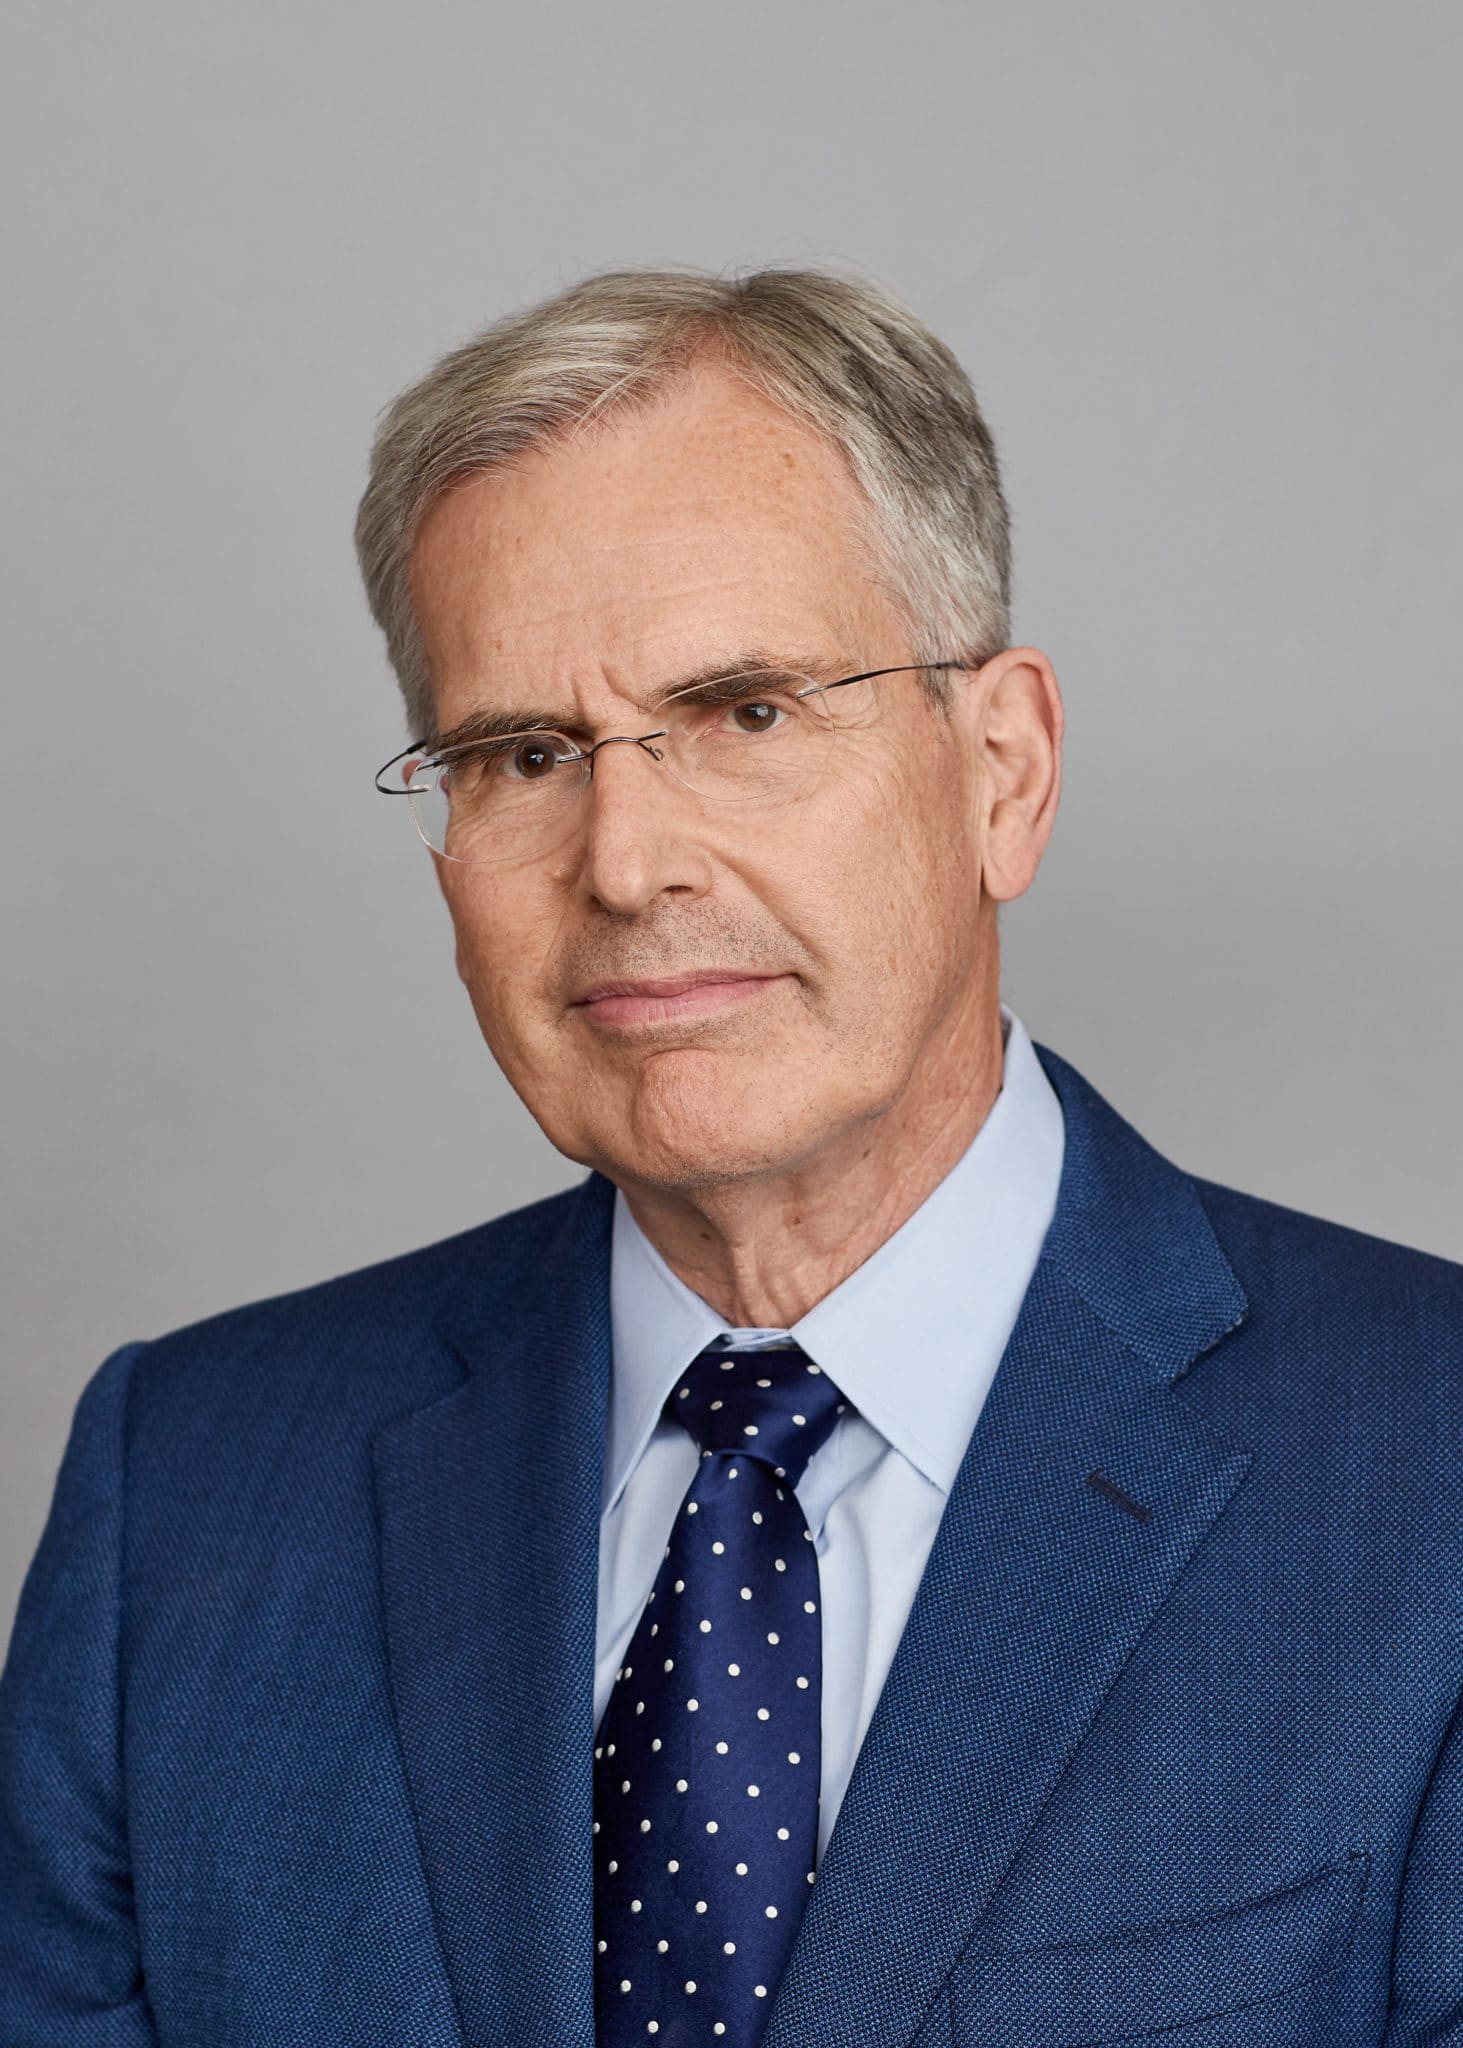 Richard L. Harper, MD